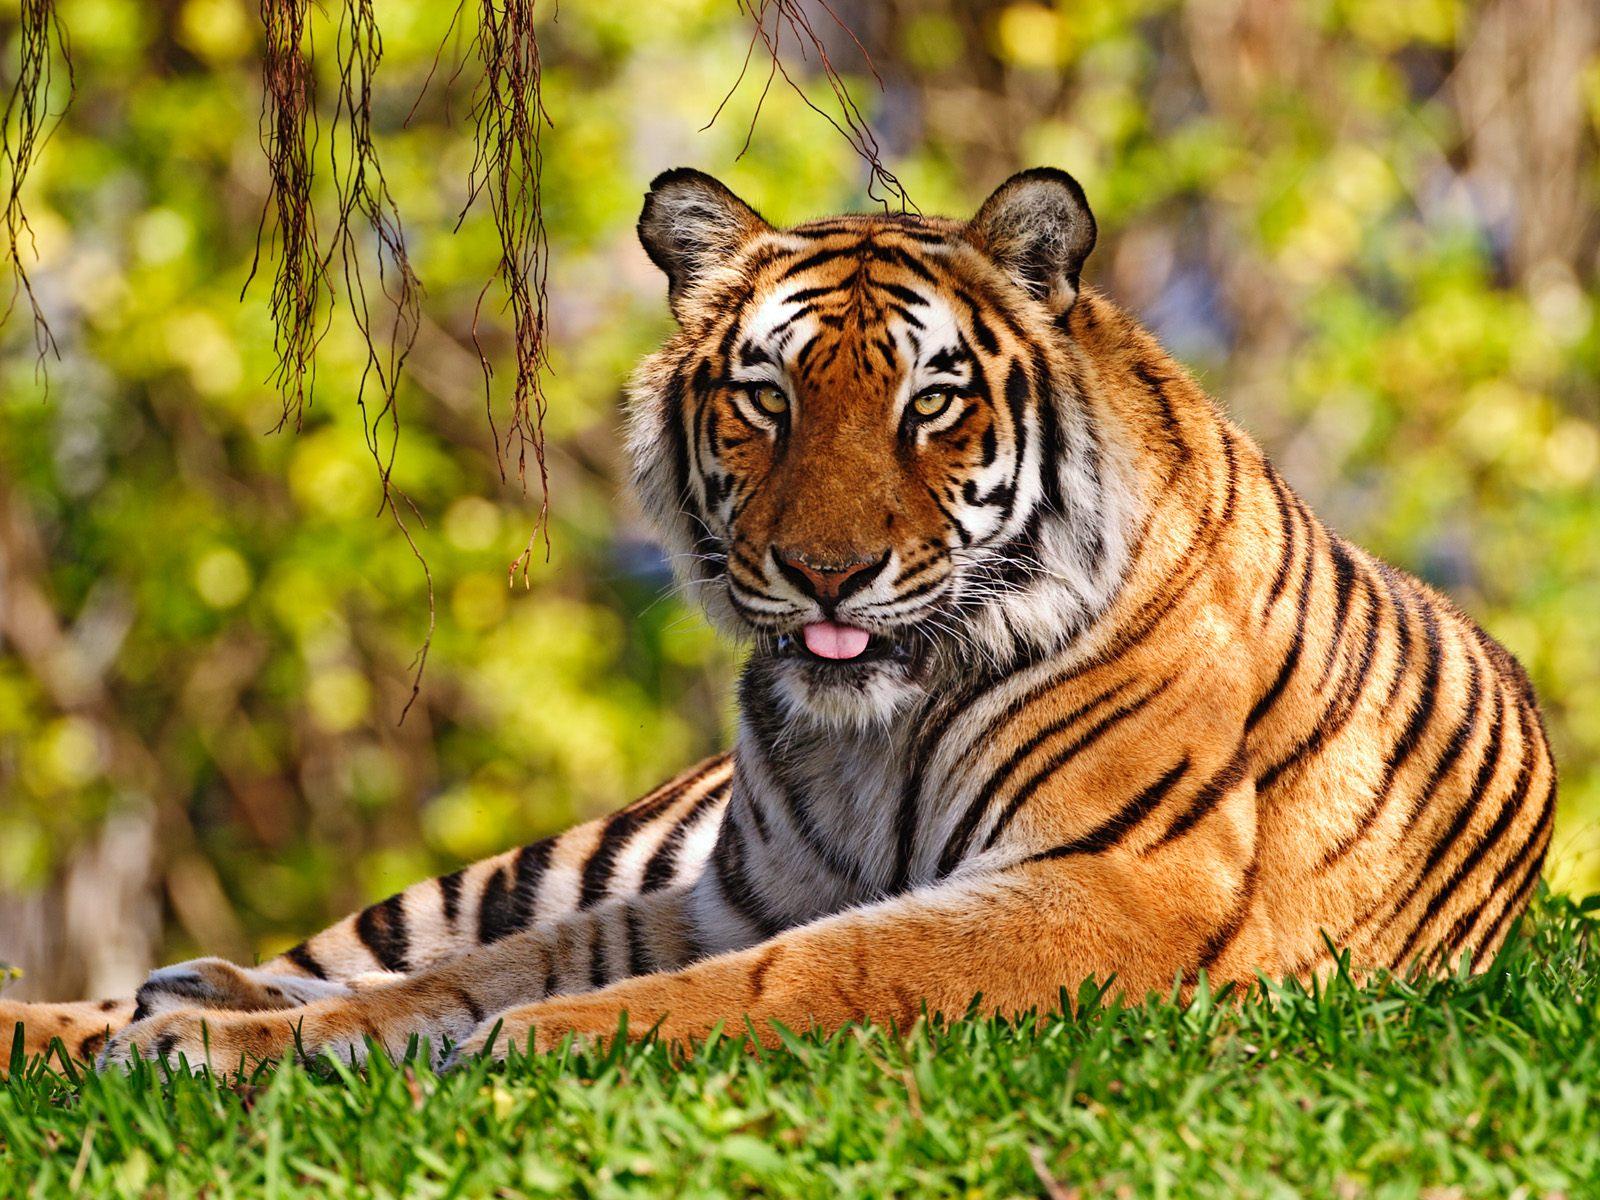 1600 x 1200 · jpeg - Beautiful tiger - Tigers Wallpaper (36642865) - Fanpop